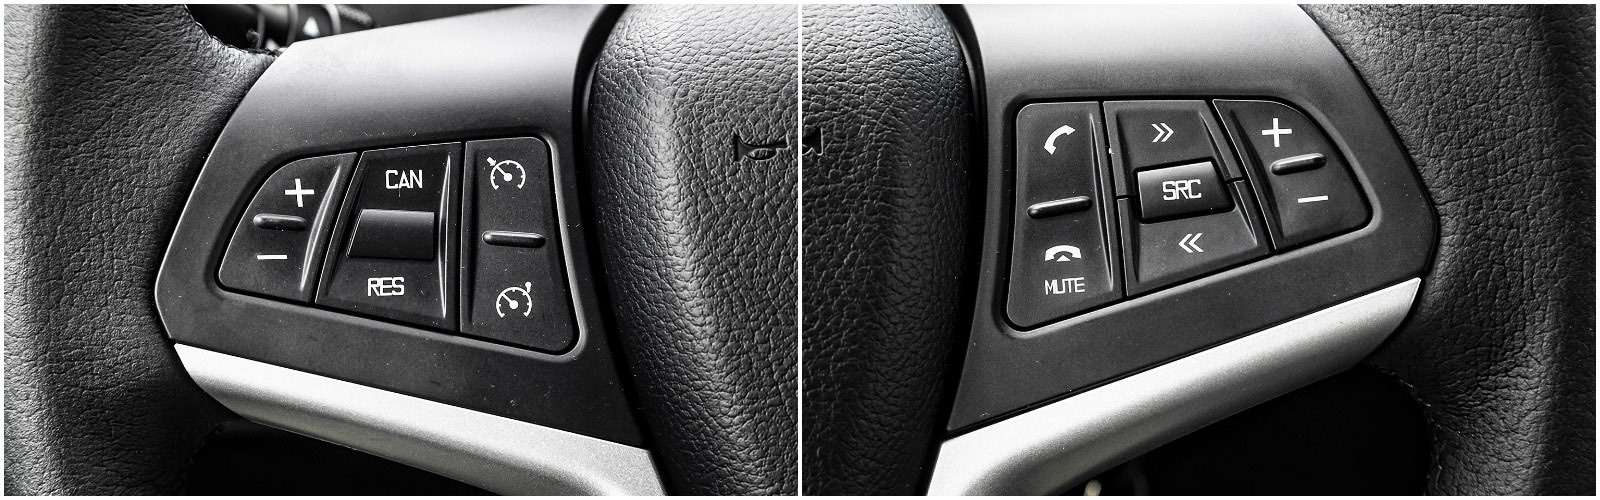 Слева на руле – блок управления круиз-контролем и ограничителем скорости, а справа – аудиосистемой и телефоном.